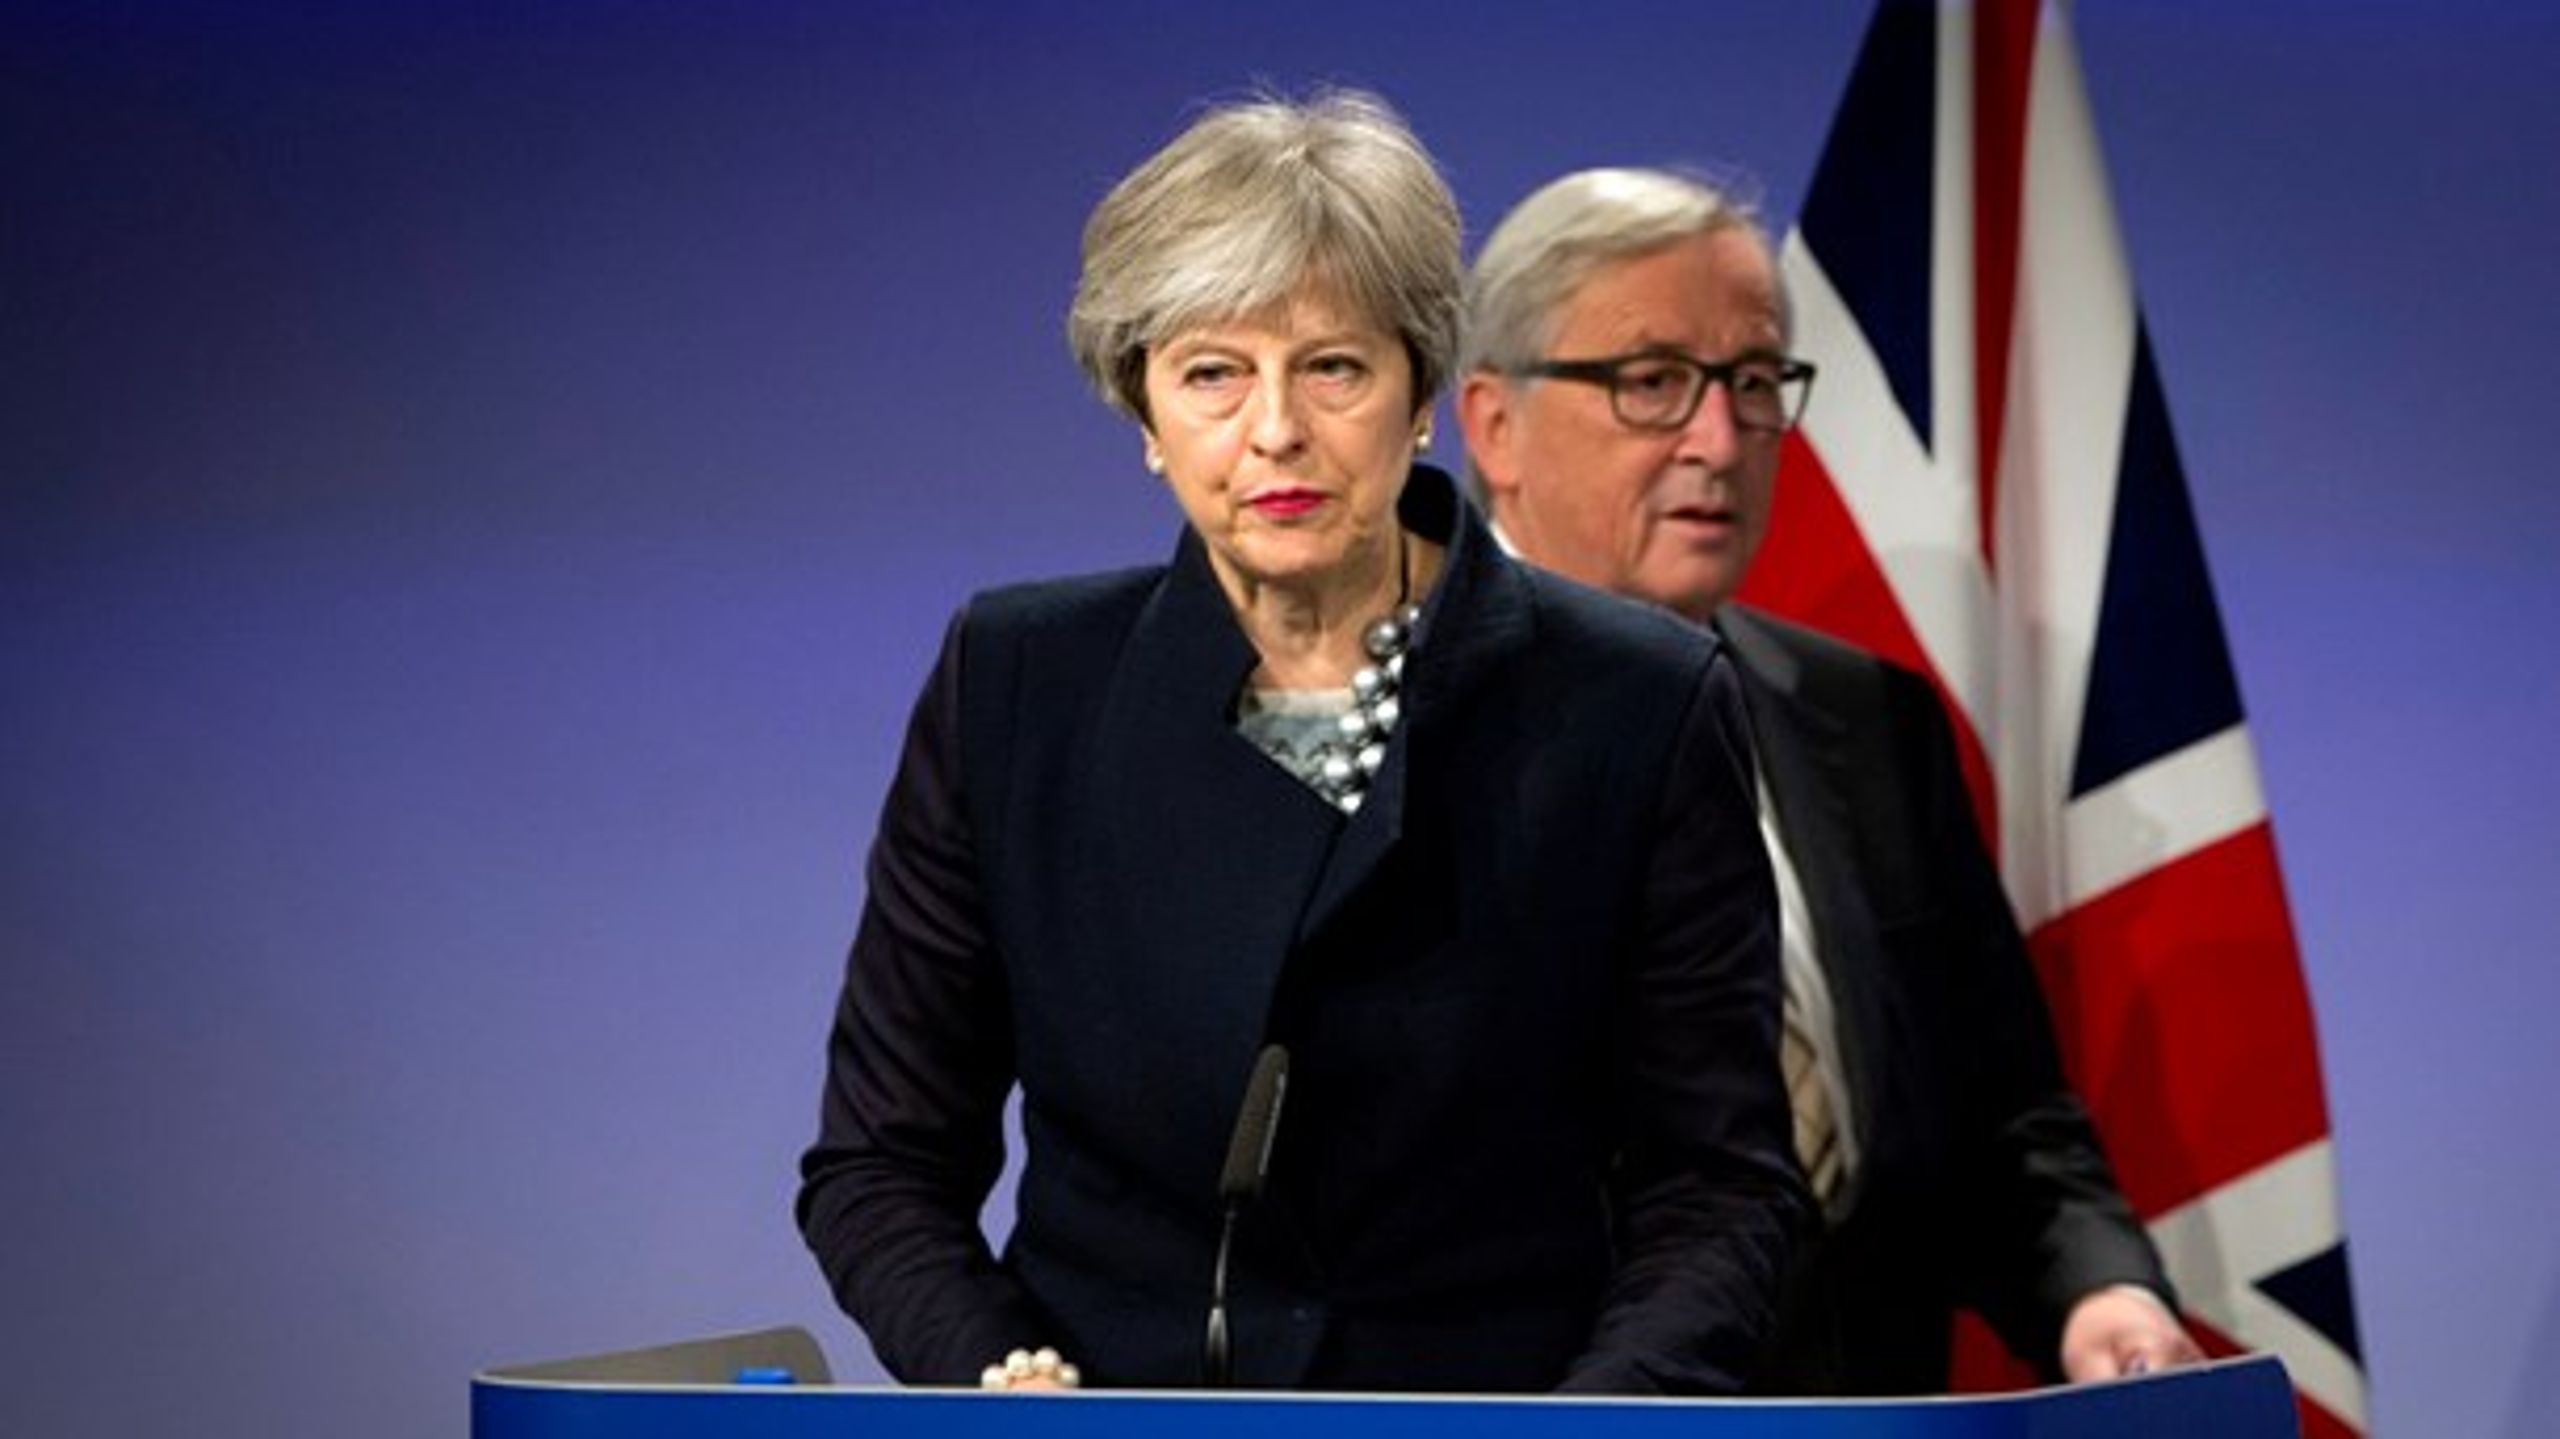 Det lykkedes ikke den britiske premierminister, Theresa May, at indgå en Brexit-aftale med EU-Kommissionens formand, Jean-Claude Juncker i Bruxelles mandag.